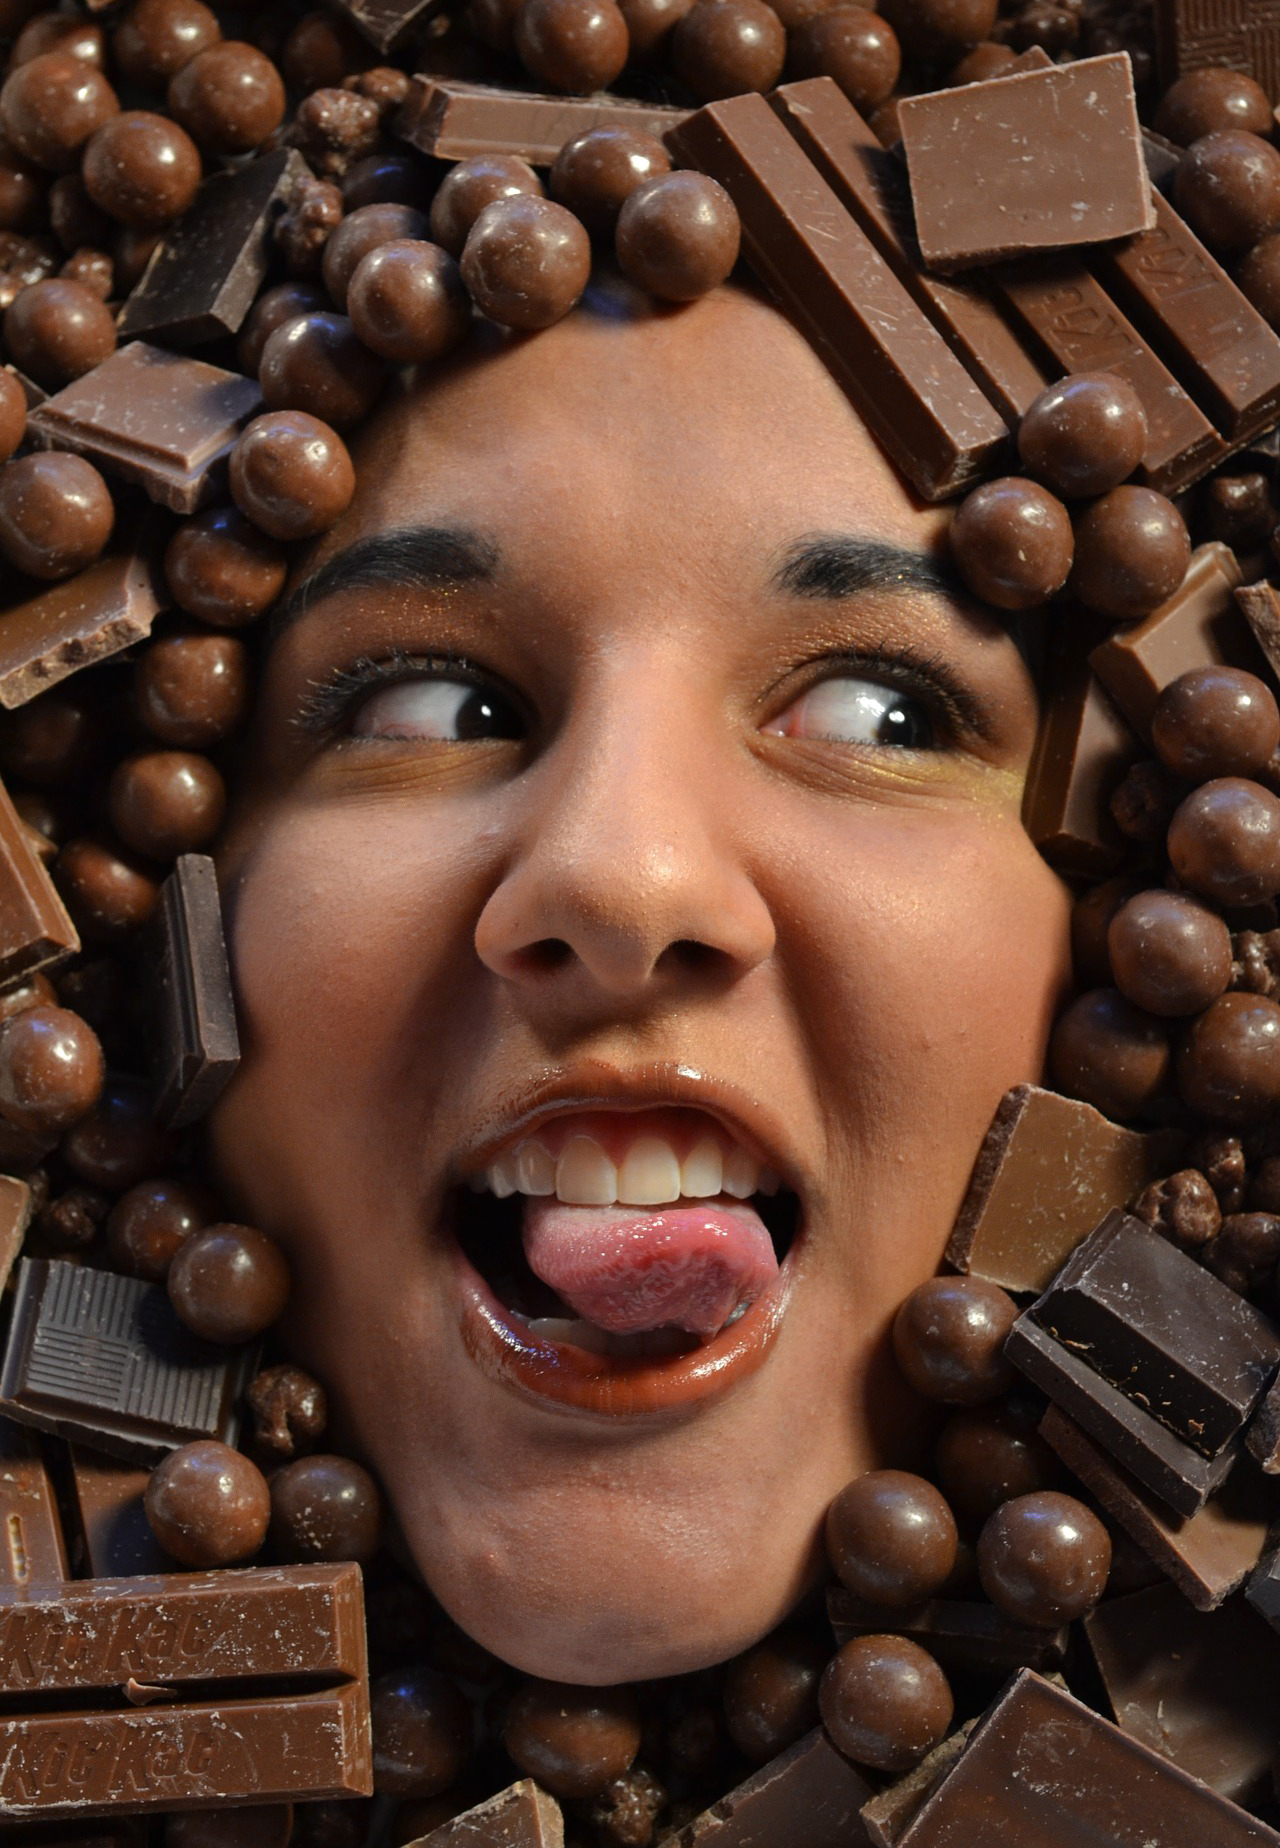 Последствия превышения дозы: что будет, если есть много шоколада? 